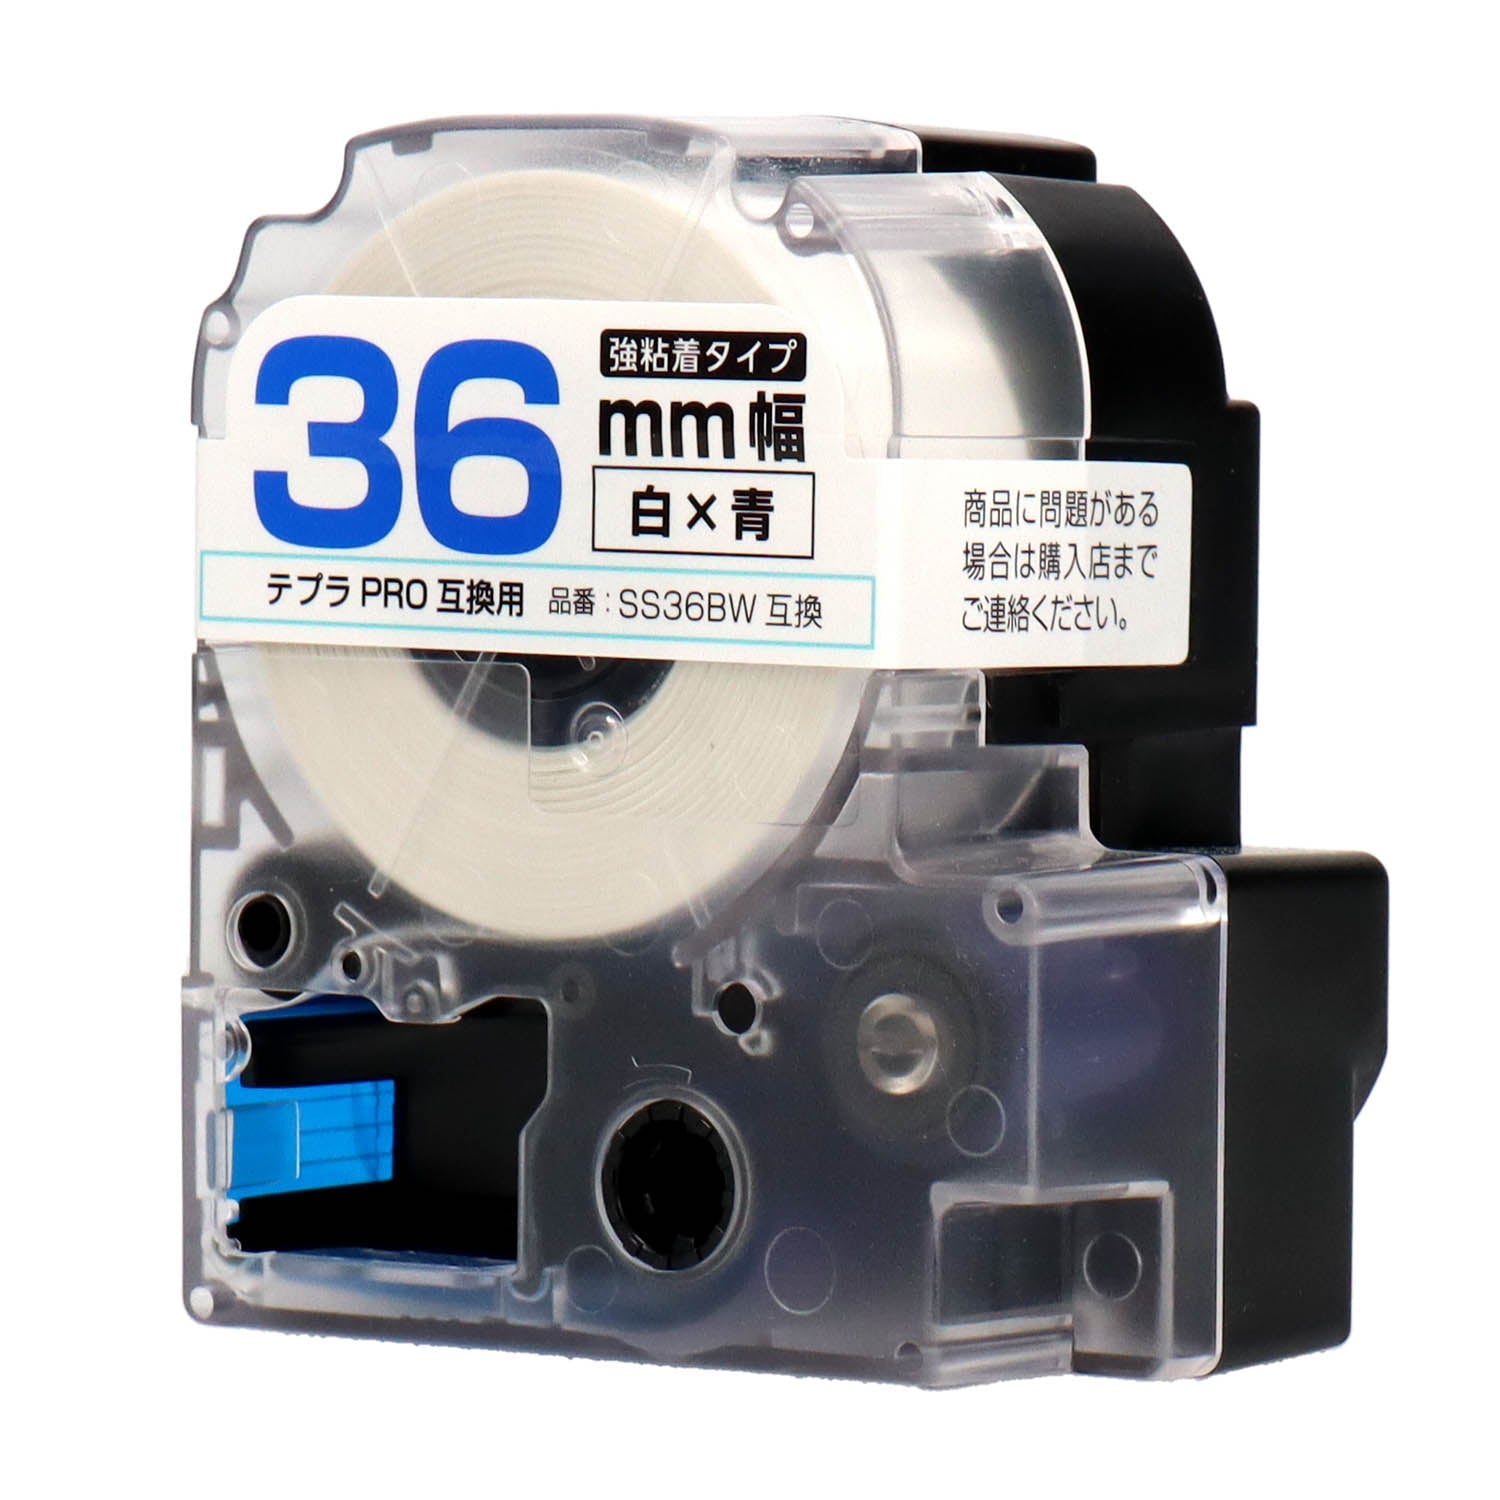 テプラPRO用互換テープカートリッジ 白×青文字 36mm